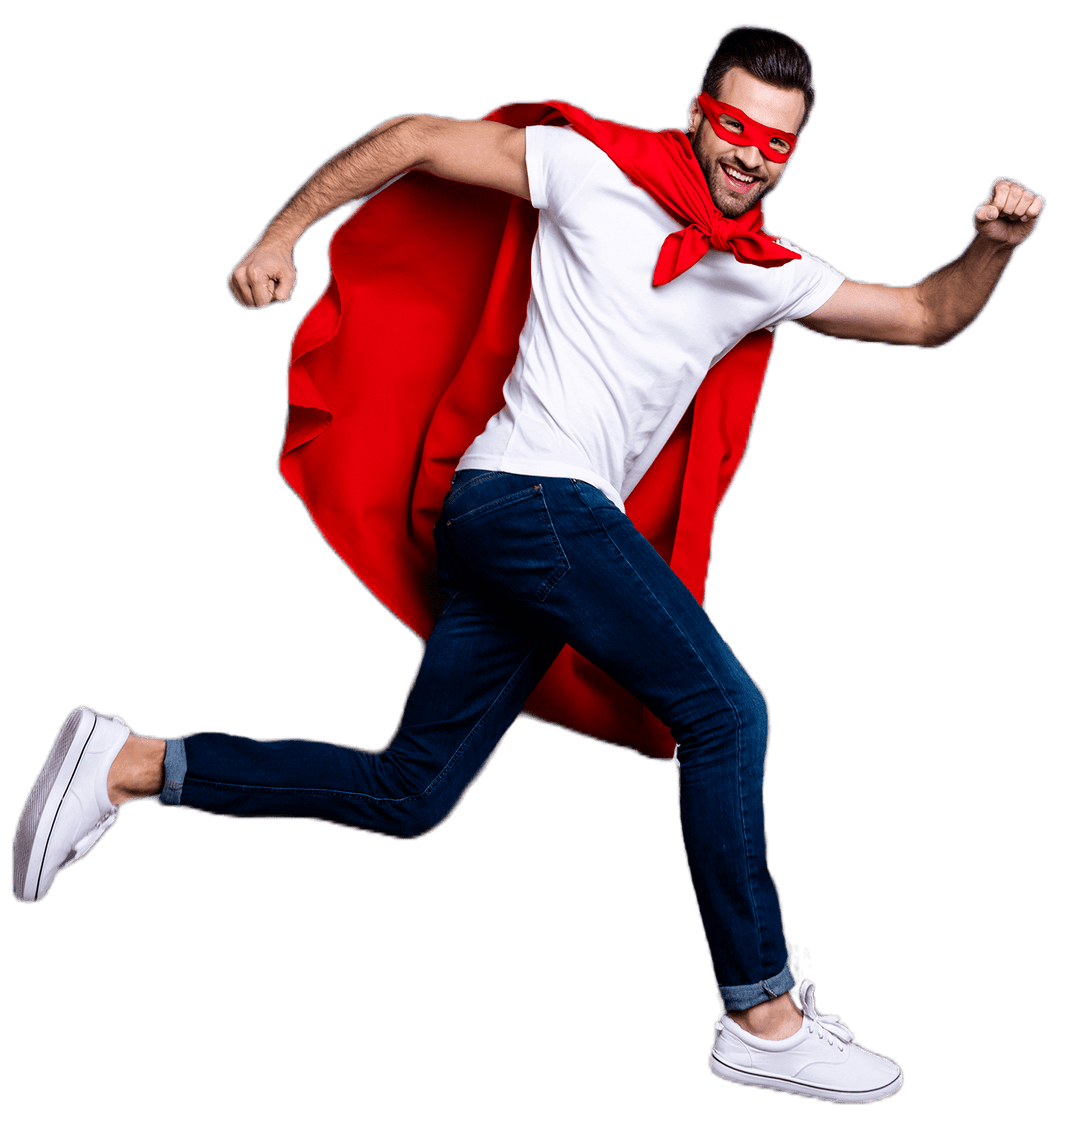 Zu sehen ist ein junger Mann, der ein Superheldencape und eine zugehörige rote Maske trägt. Er läuft